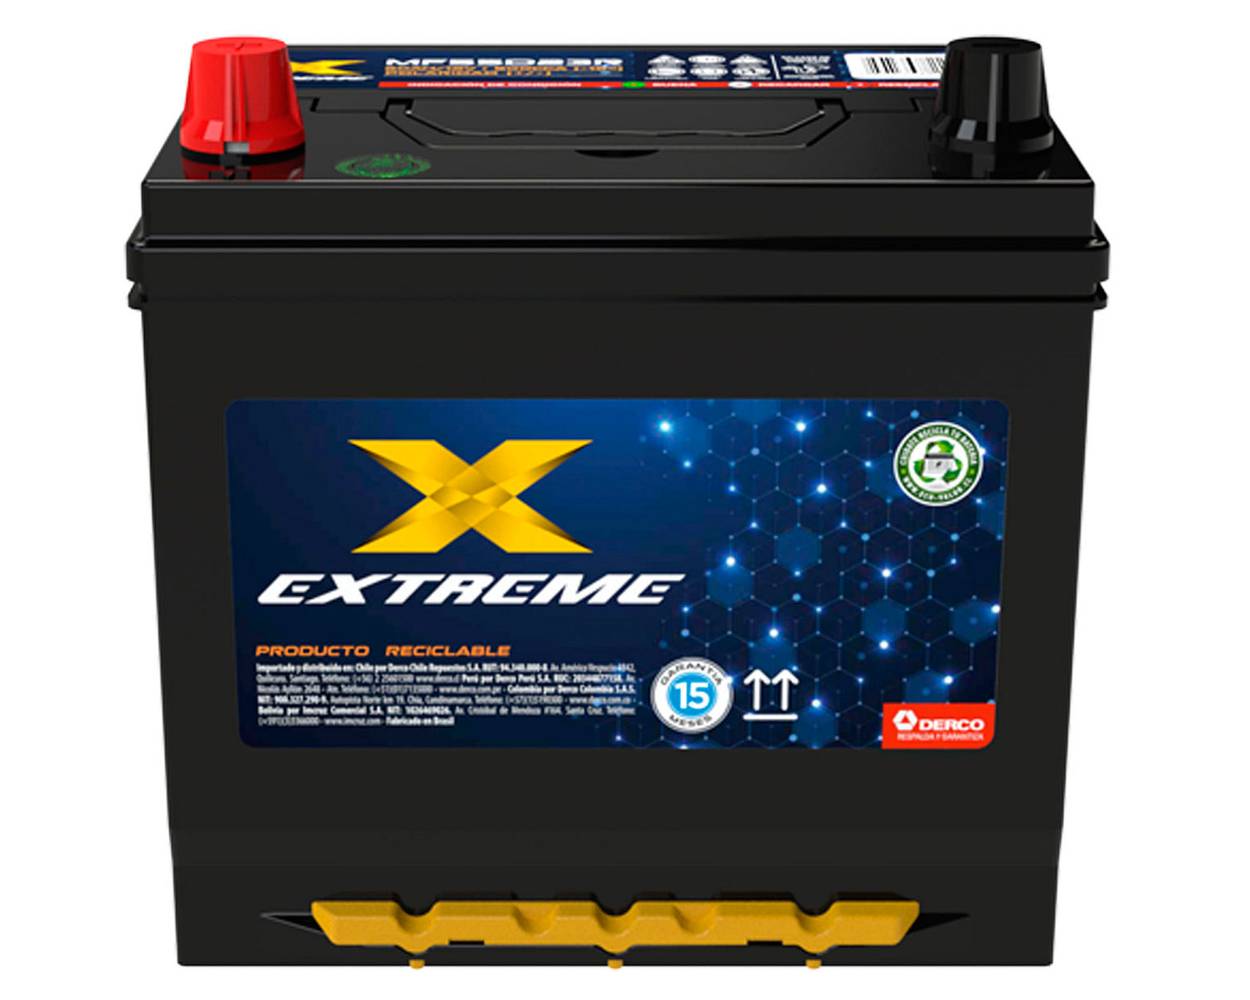 Extreme batería 60ah 500cca derecho mf55d23r (1 u)